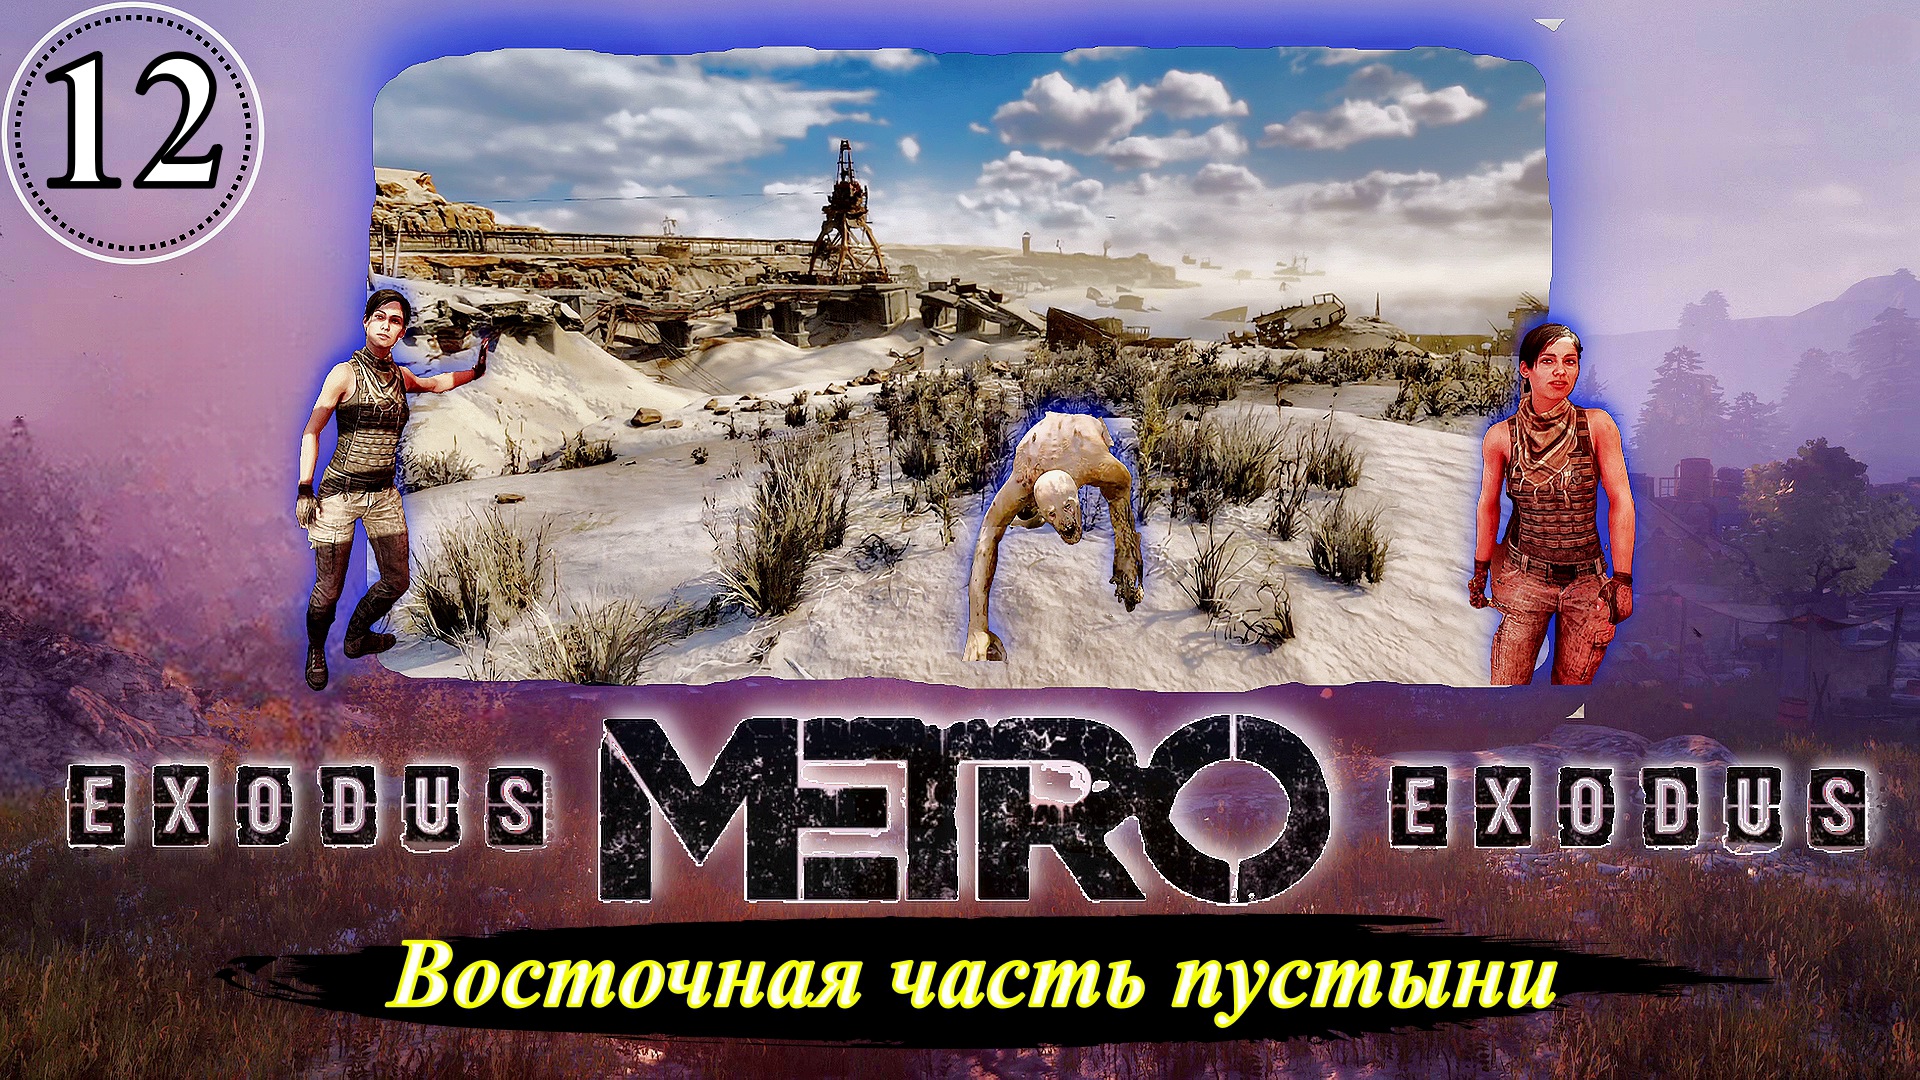 Metro Exodus Восточная часть пустыни - Прохождение. Часть 12.mp4